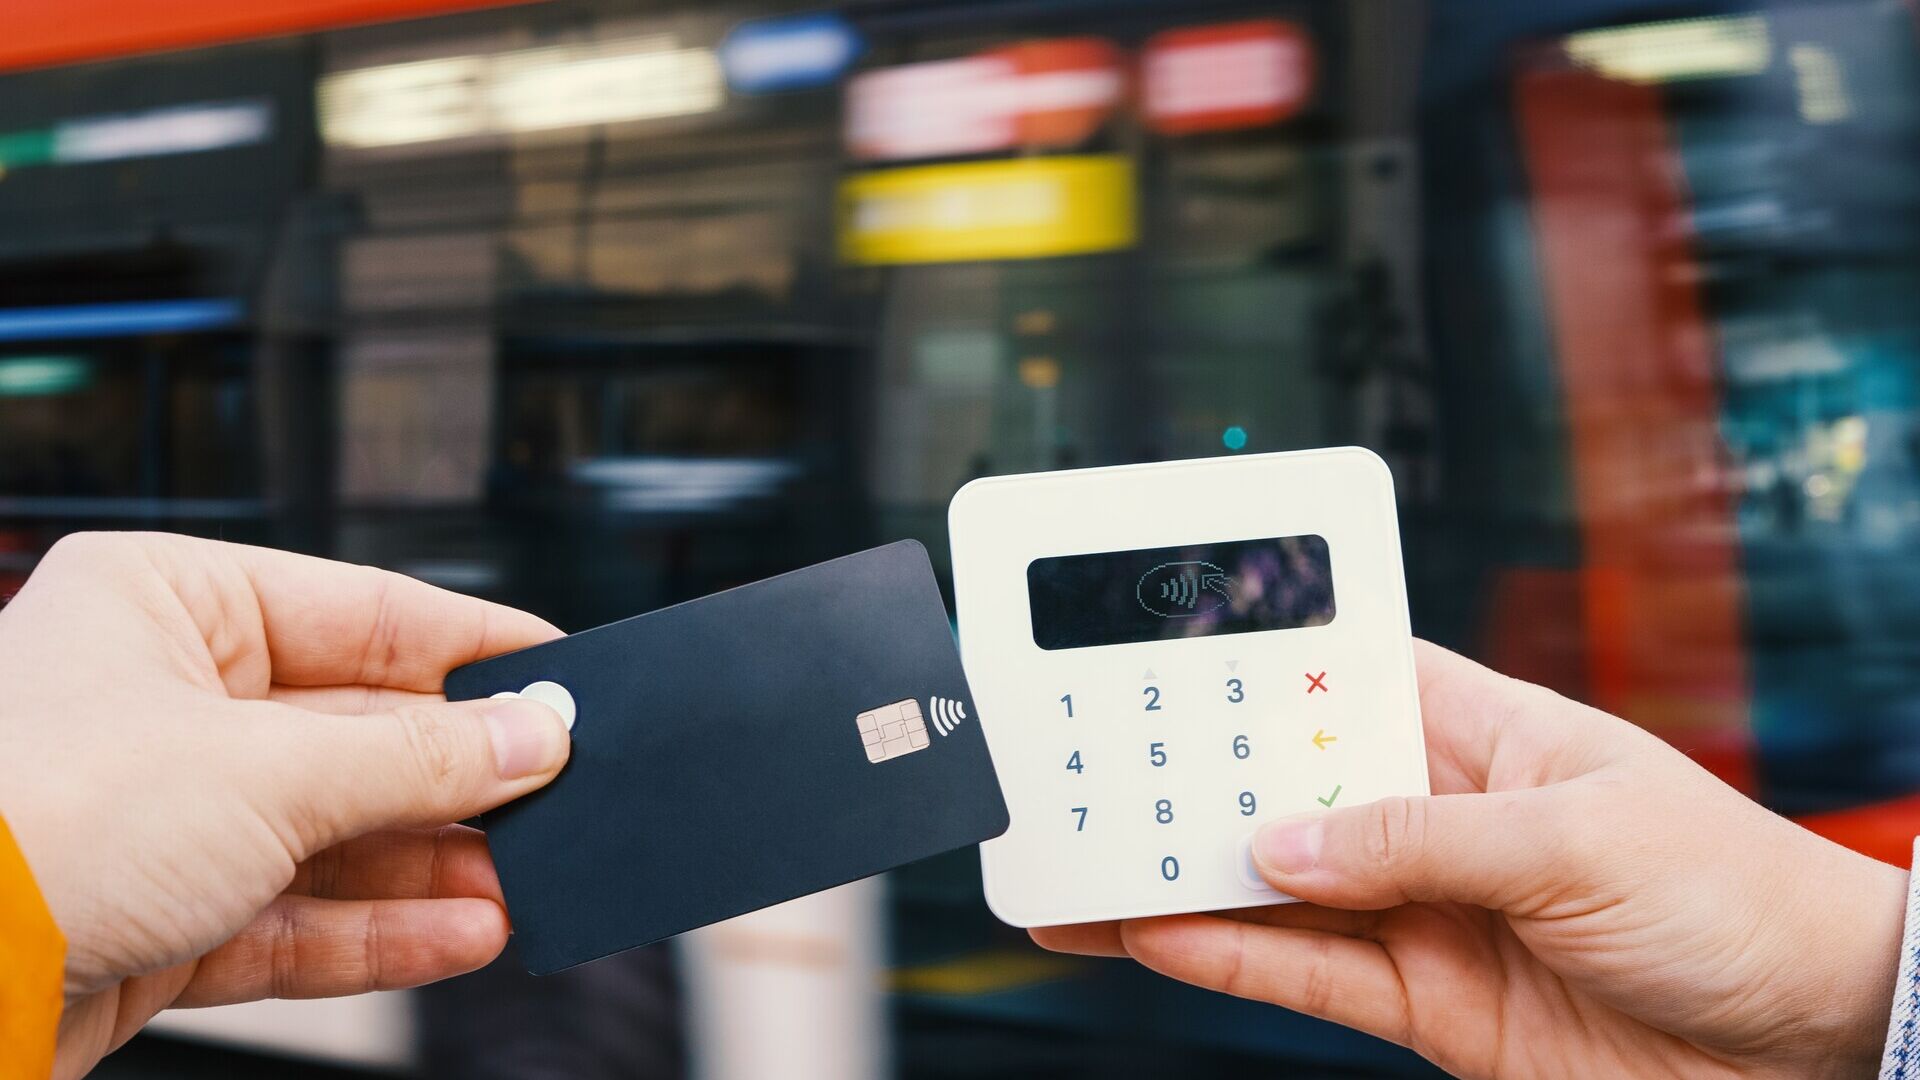 Pagamenti da mobile: i piccoli esercizi commerciali consentono pagamenti con le carte o digitali spesso per importi elevati perché altrimenti avrebbero costi di transazione più alti